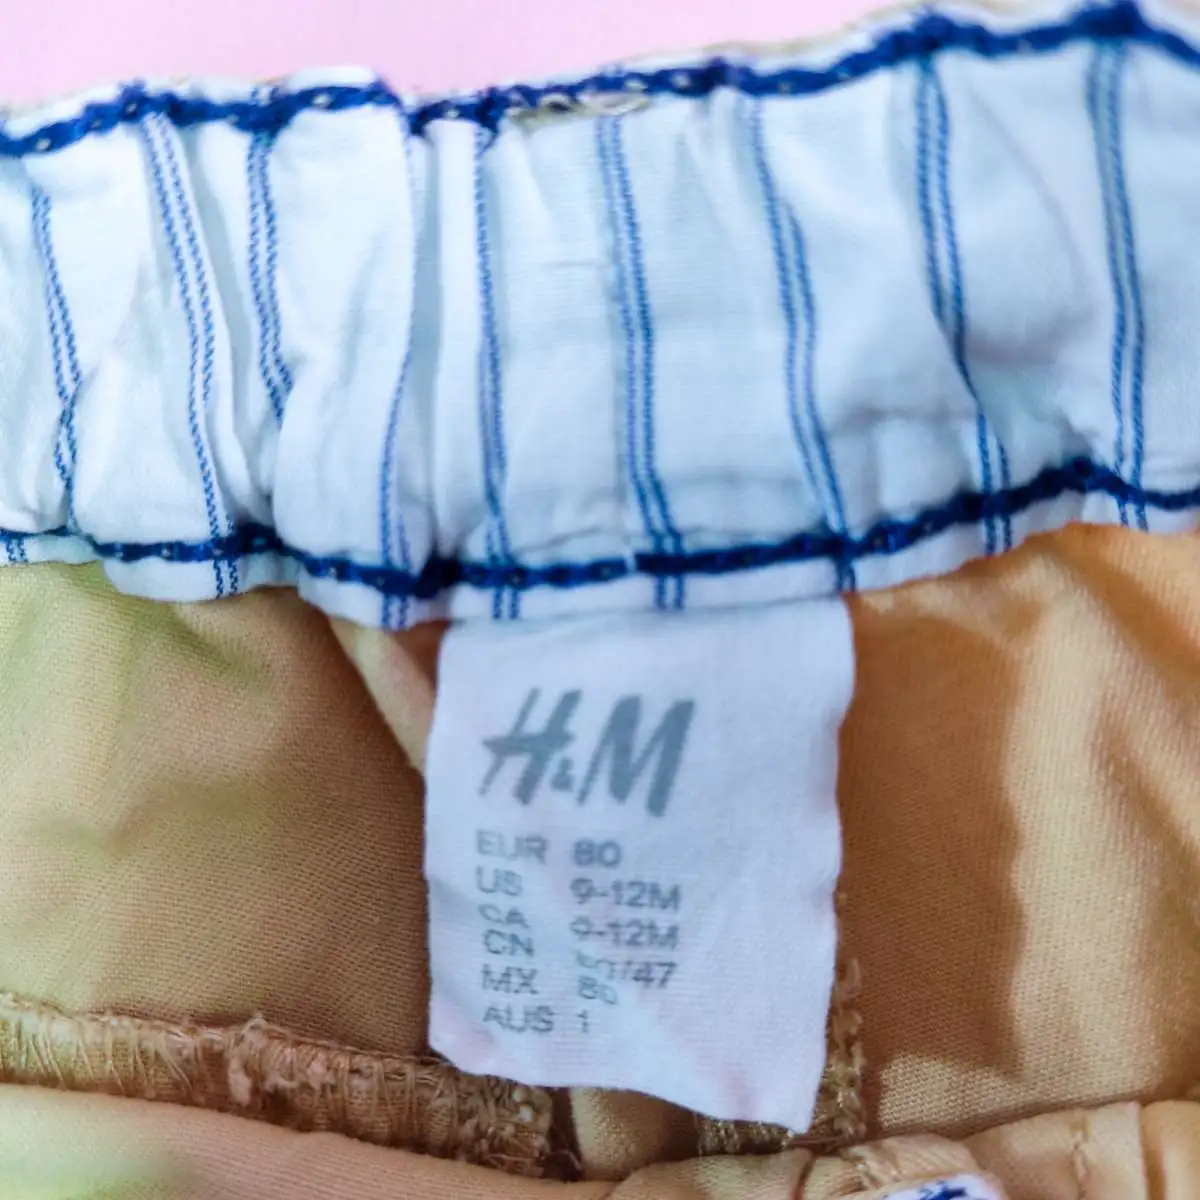 H&M กางเกงขาสั้นสีครีมเอวยางยืดมีคราบเหลือง 9-12 m 